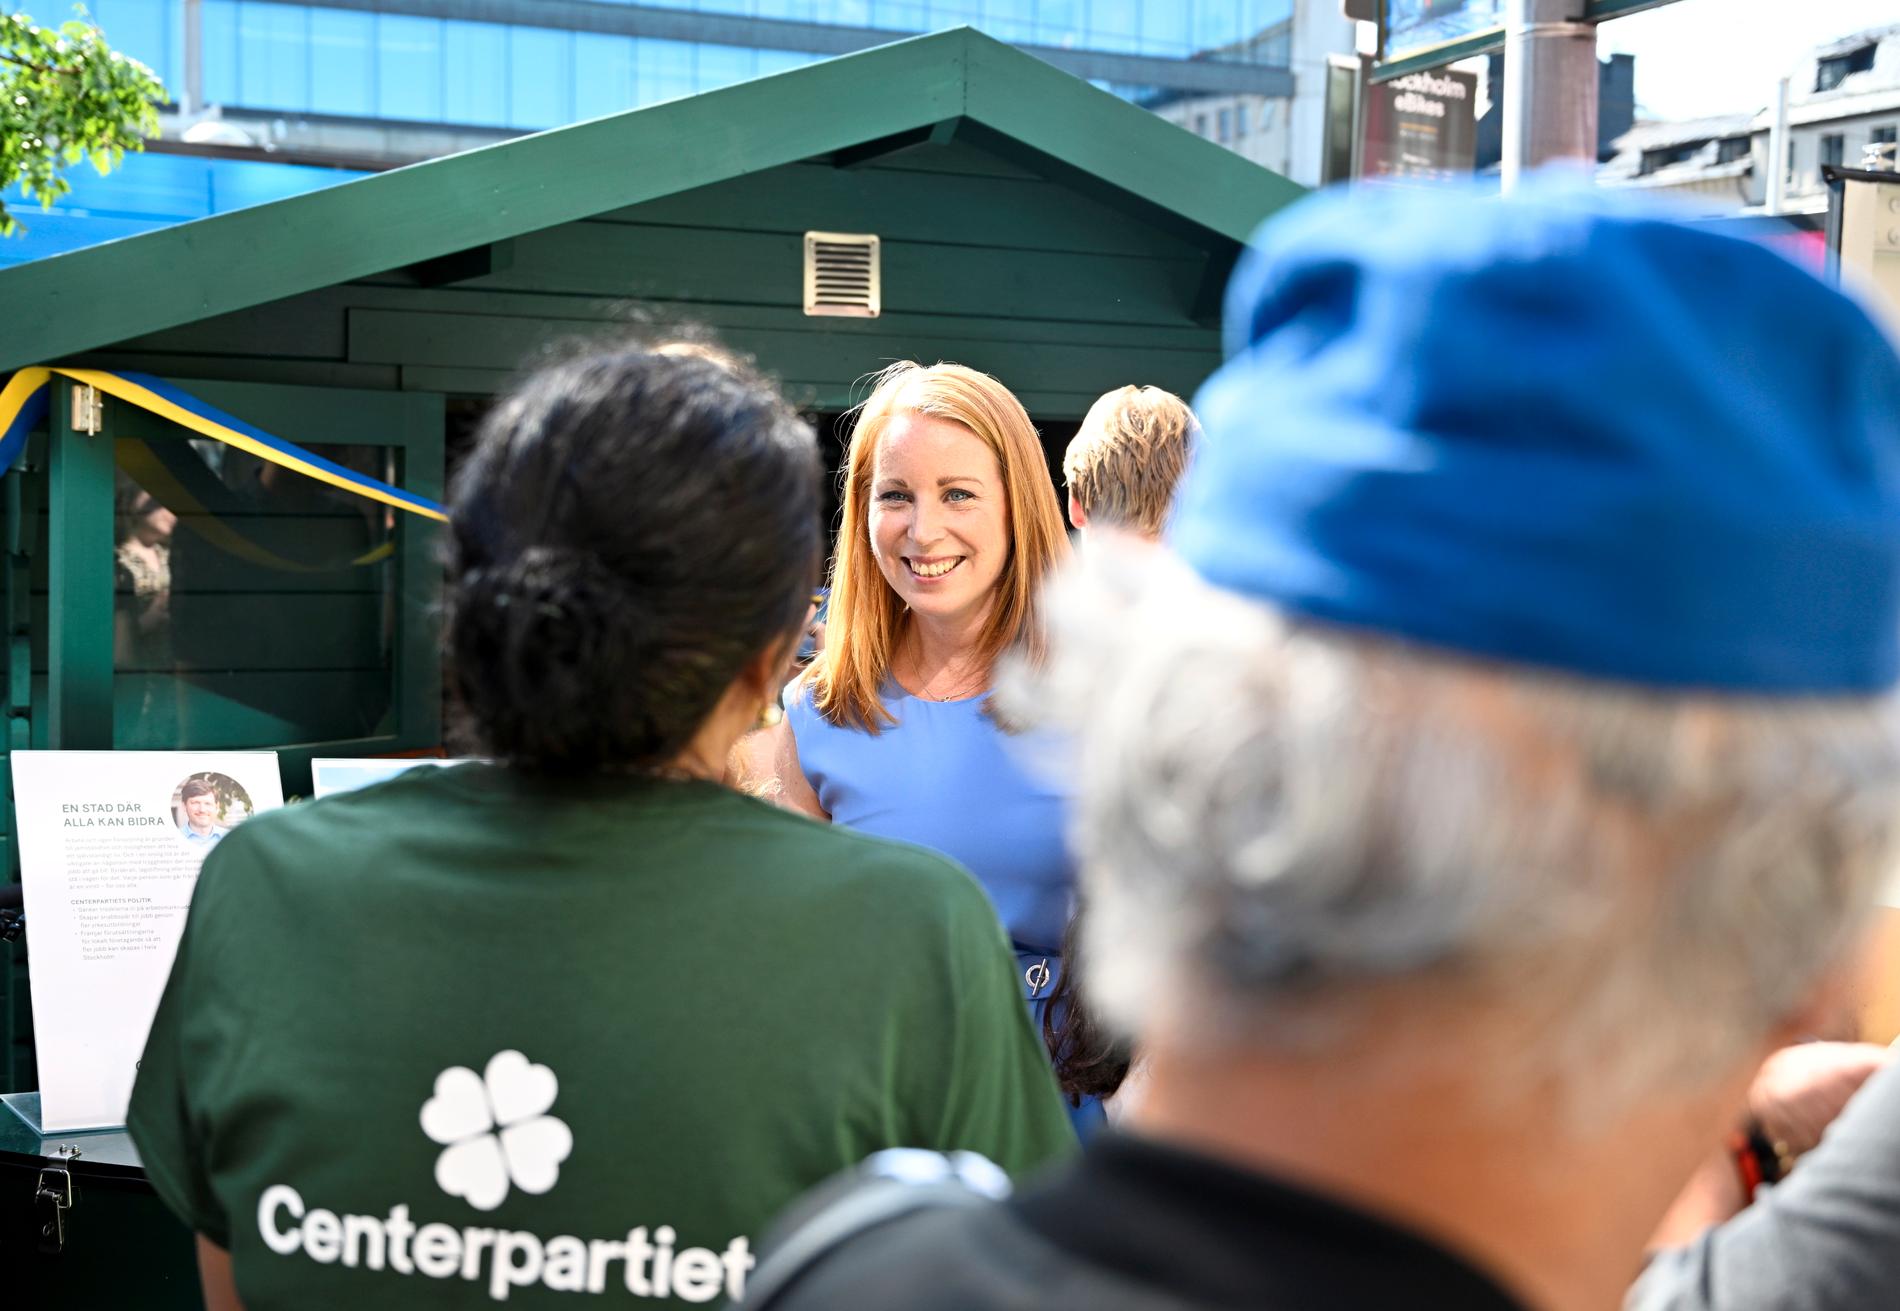 Centerpartiets partiledare Annie Lööf (C) inviger partiets valstuga i Stockholm. Med solceller på taket.